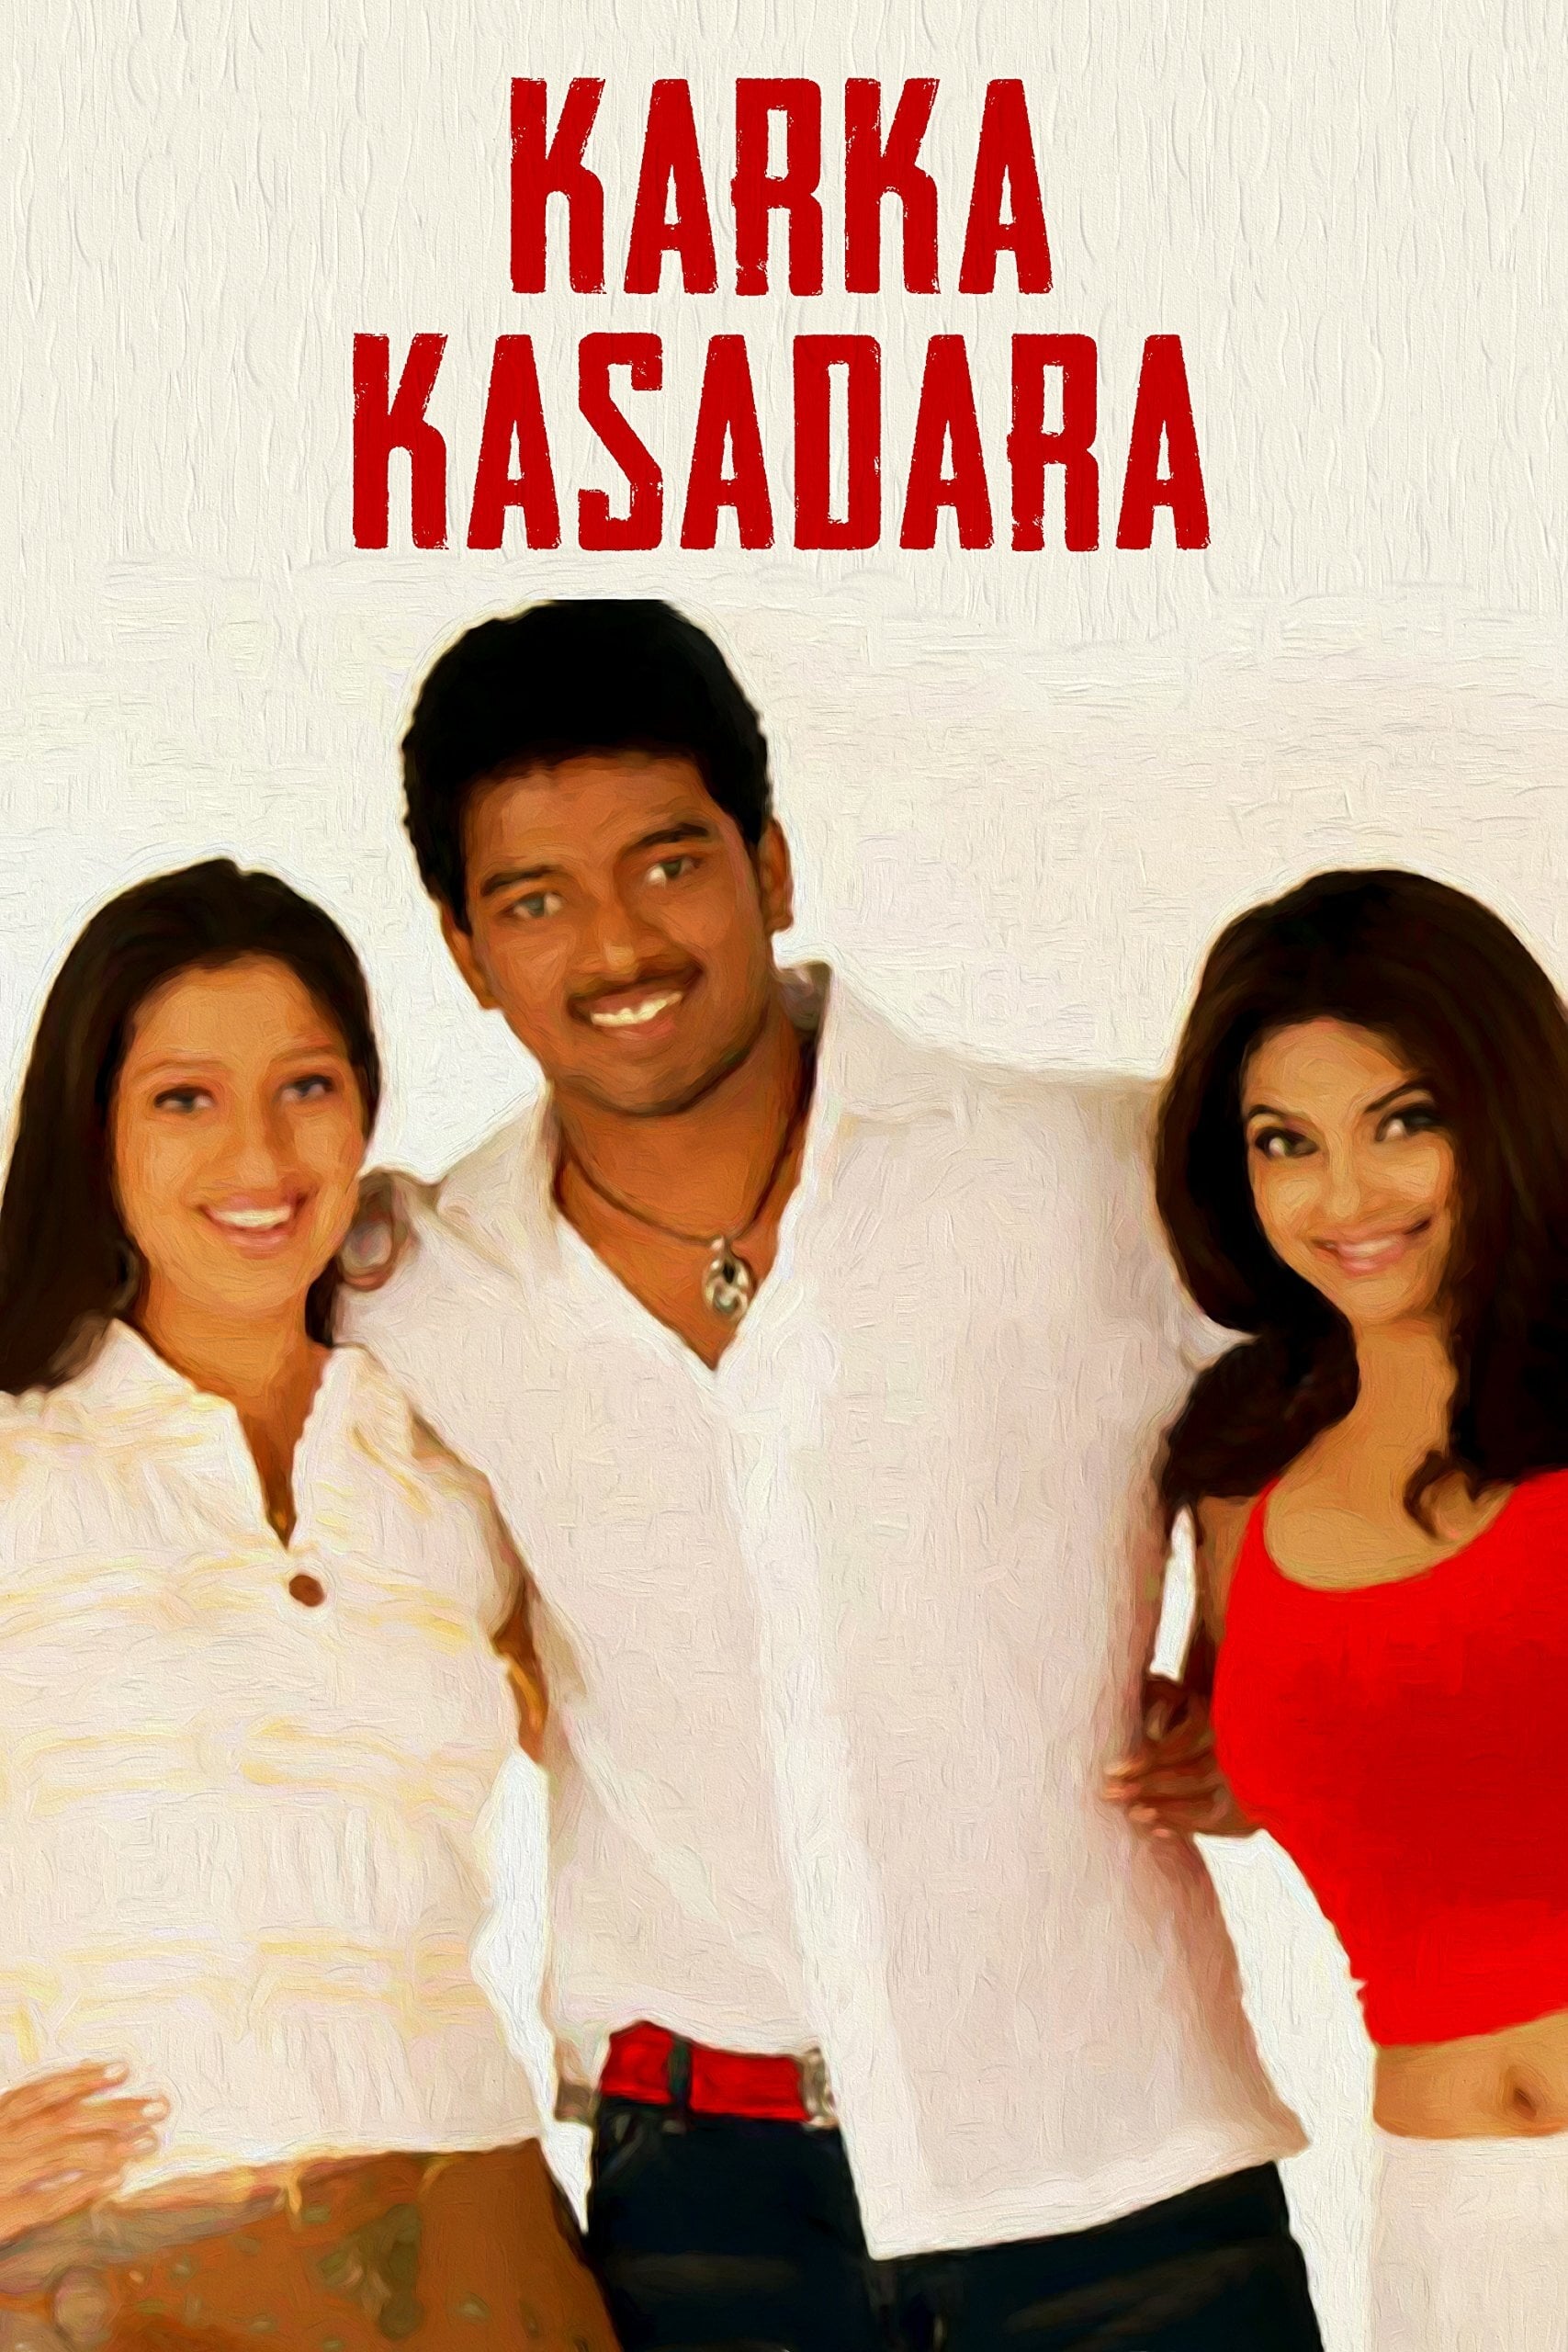 Karka Kasadara (2005)